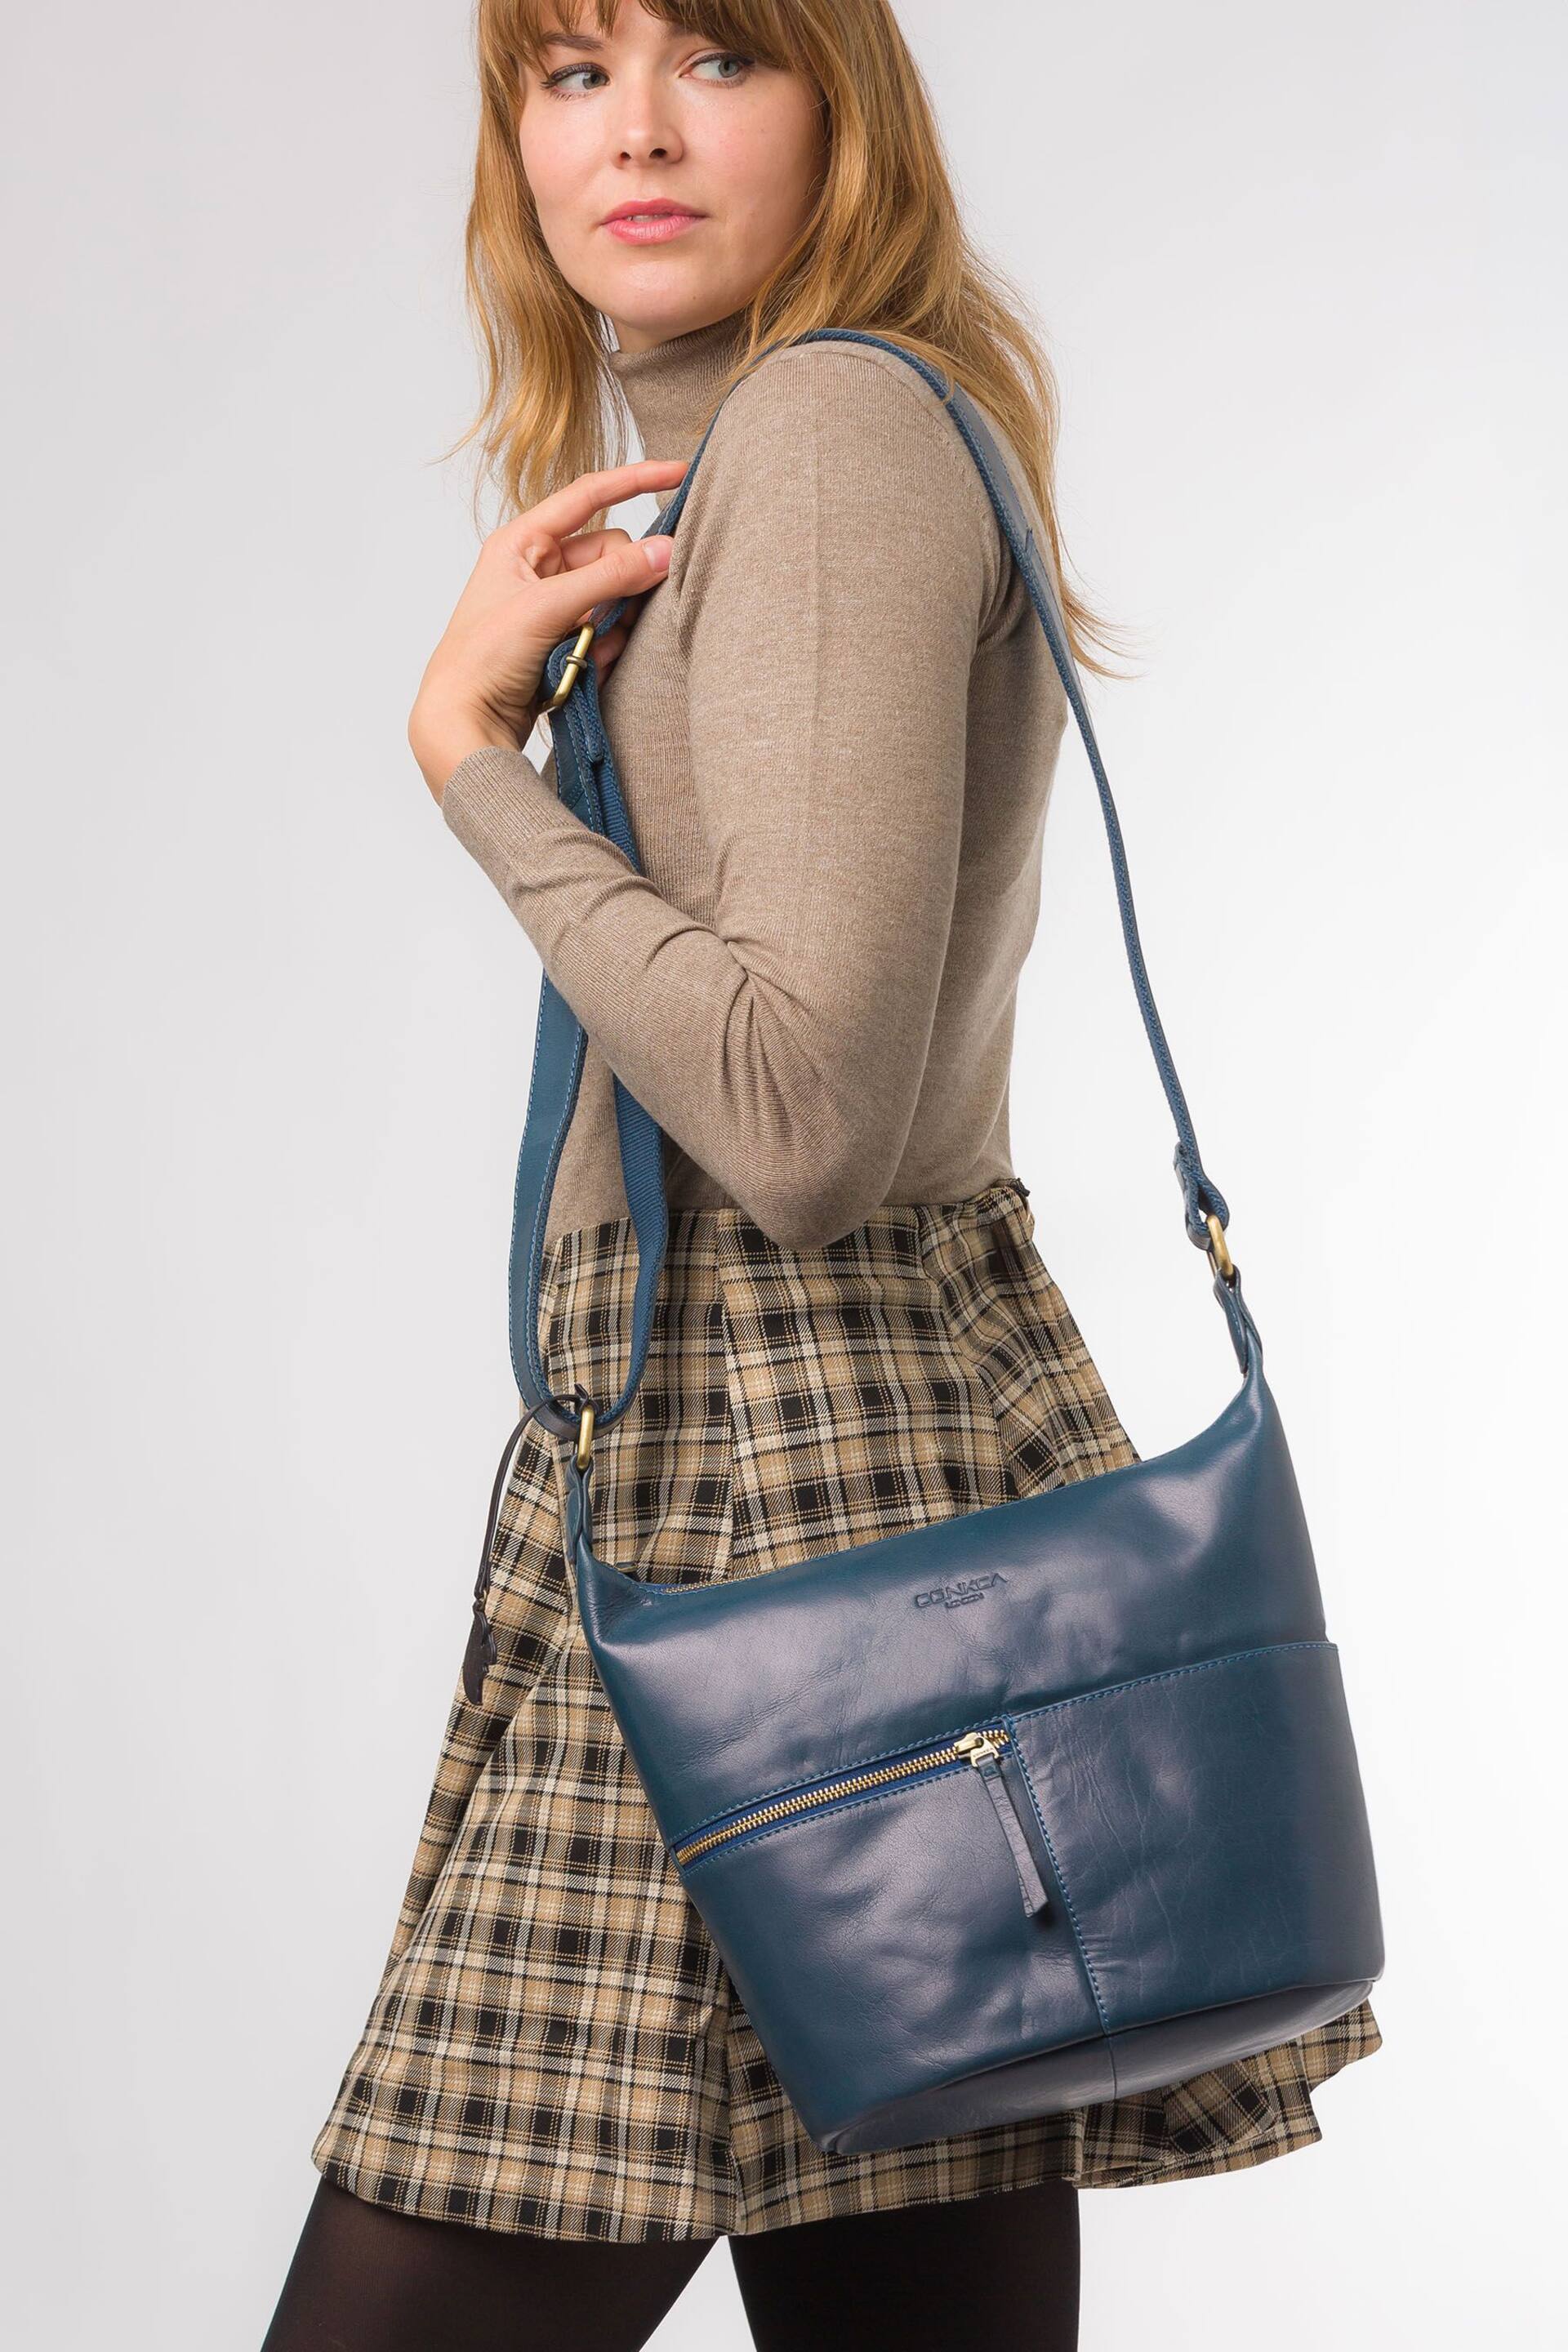 Conkca Kristin Leather Shoulder Bag - Image 6 of 7